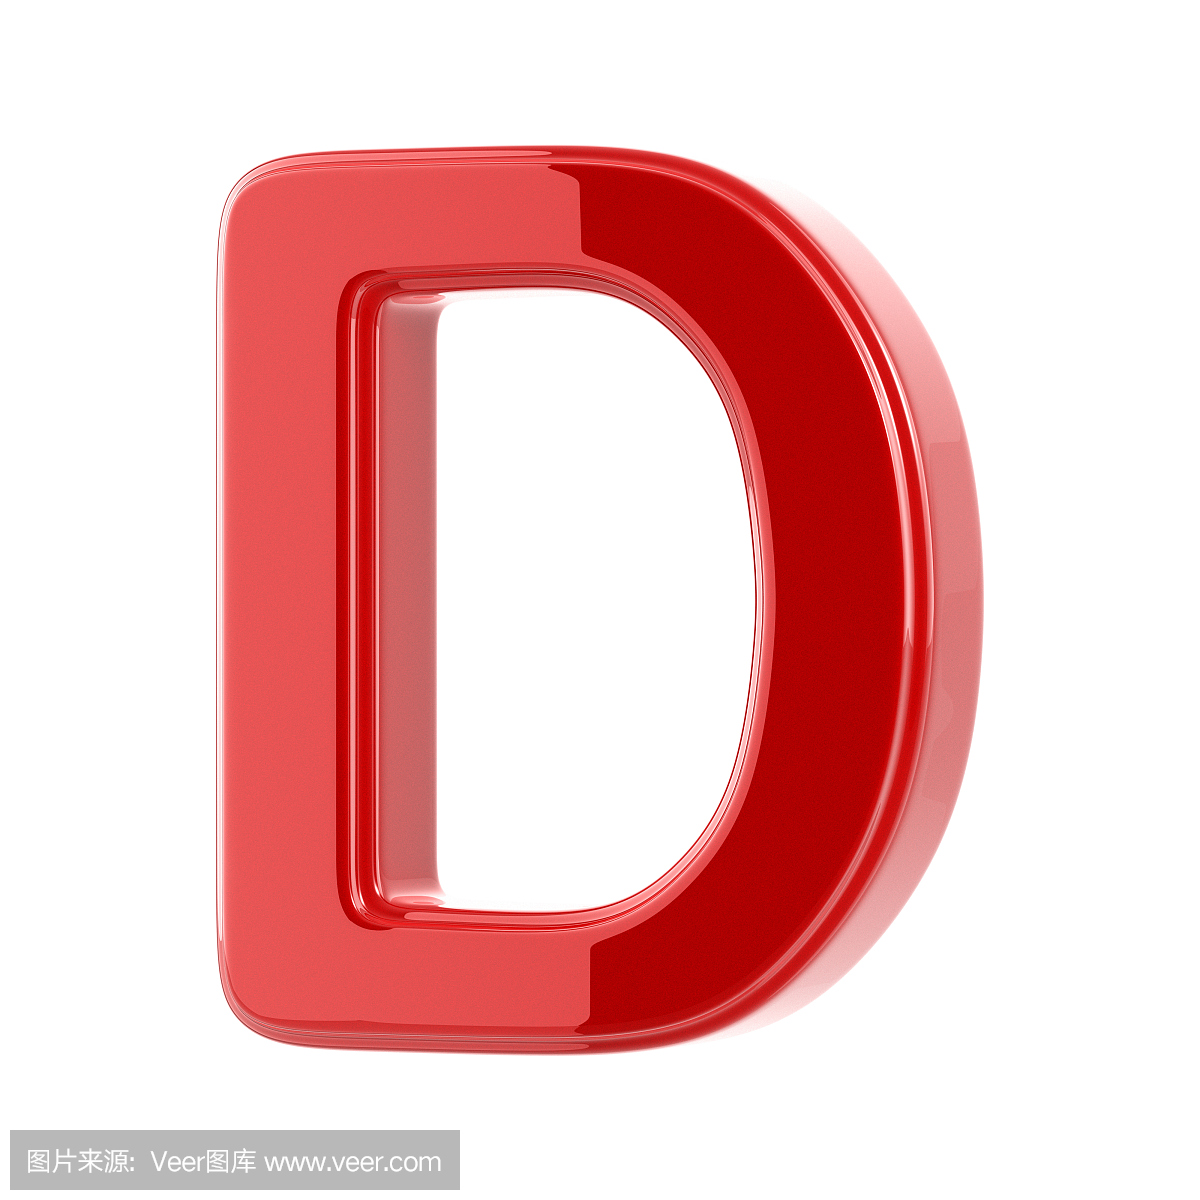 英文字母D,字母D的,字母D,D字母的